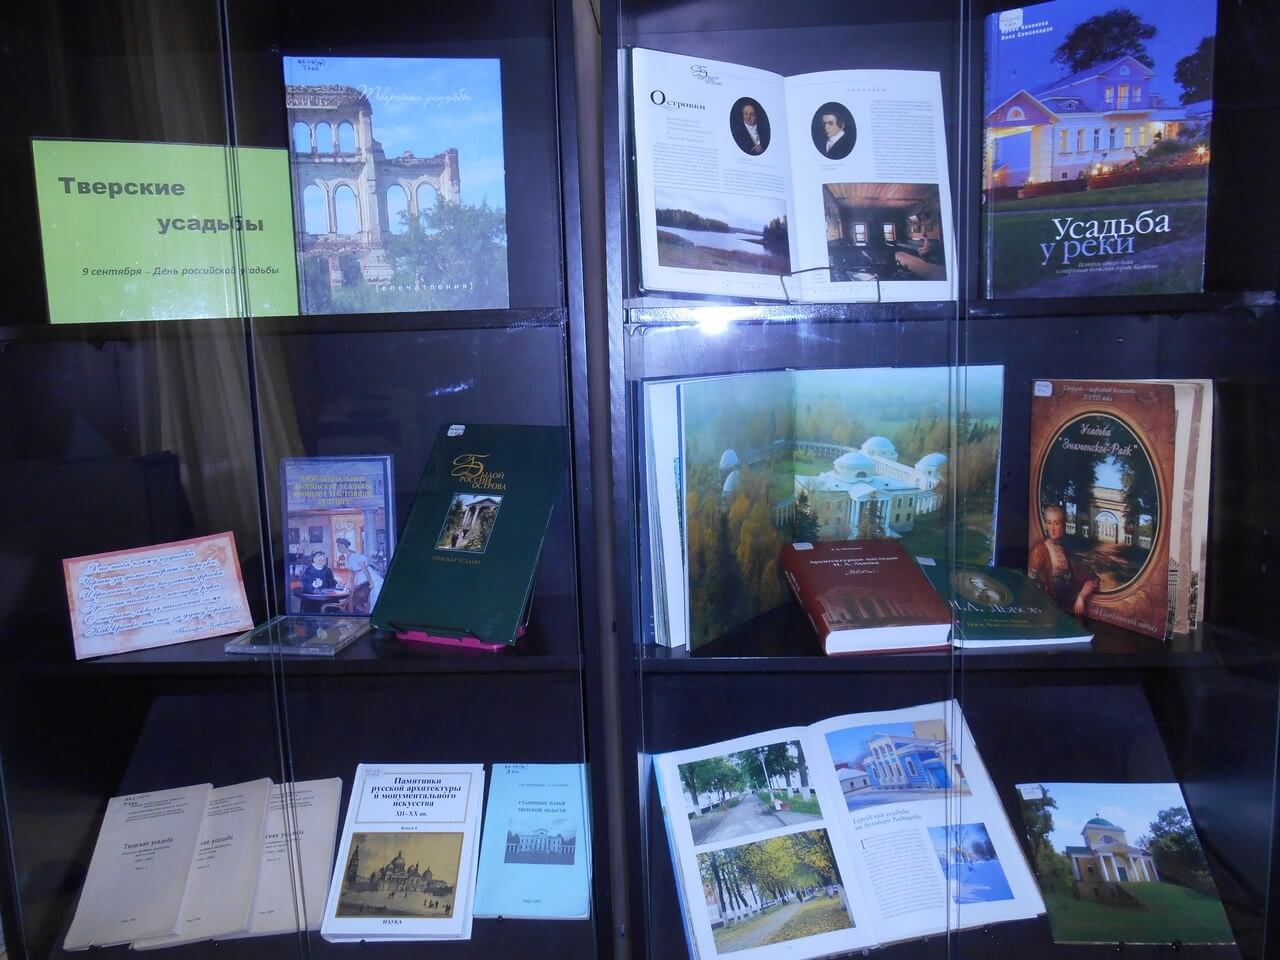 В Твери проходит книжная выставка "Тверские усадьбы"